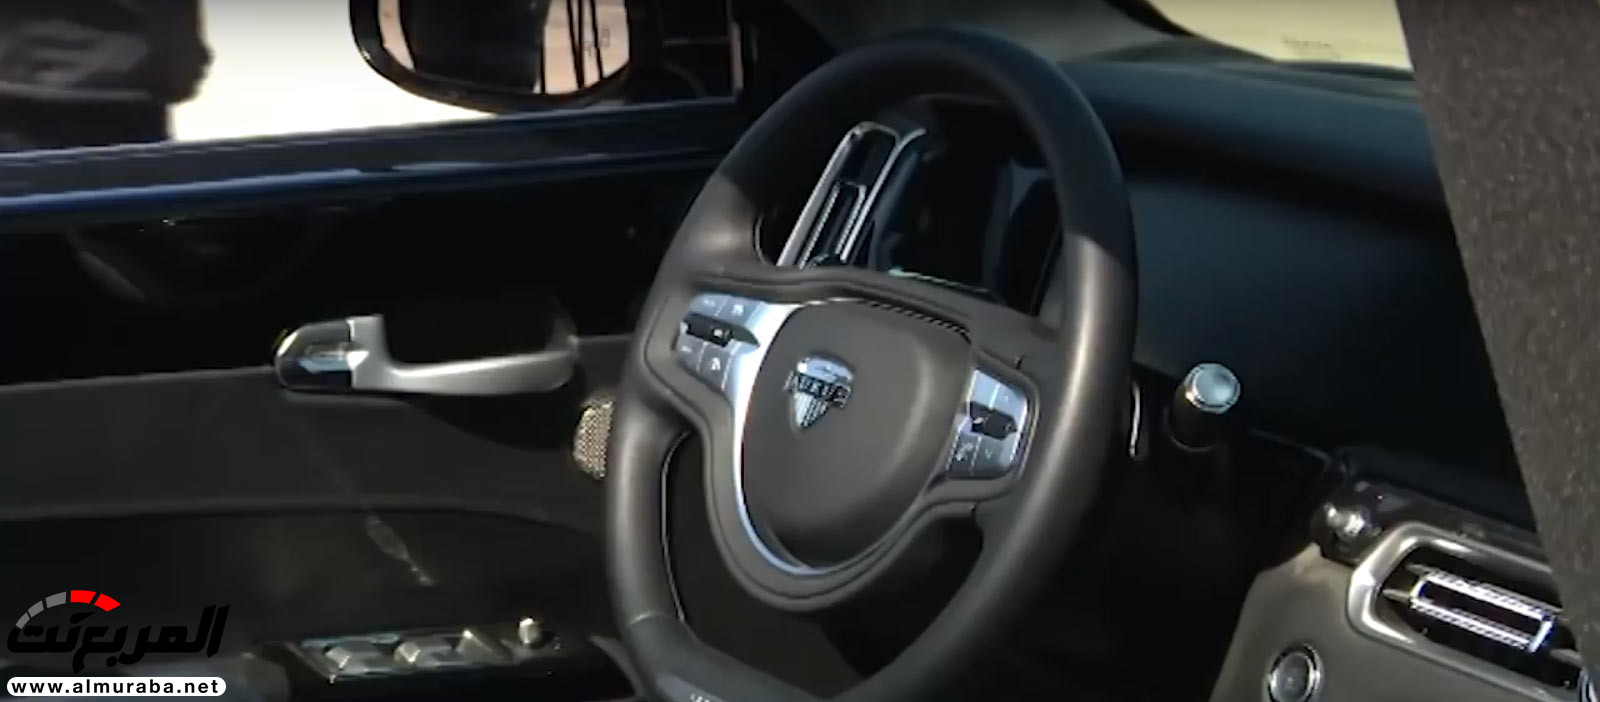 "بالفيديو" سيارة اوروس كشف الروسية تعتقد أنها منافسة رولزرويس داون 25